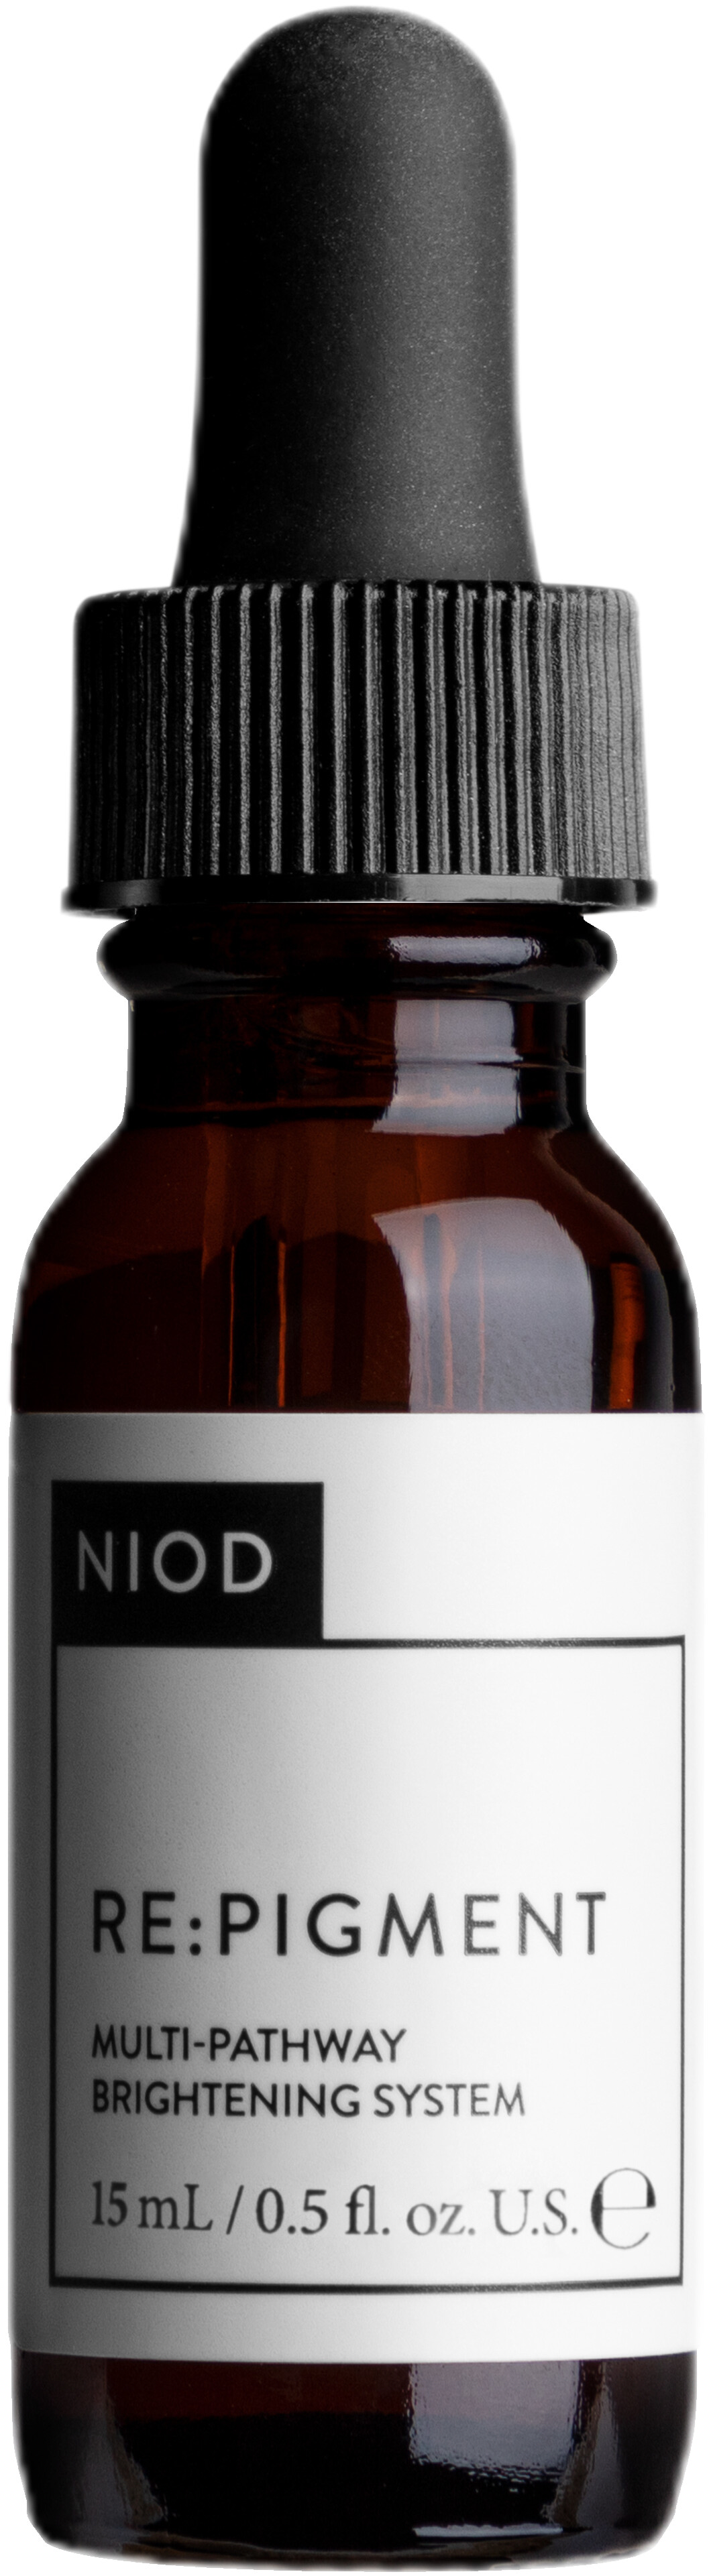 NIOD RE: Pigment 15ml